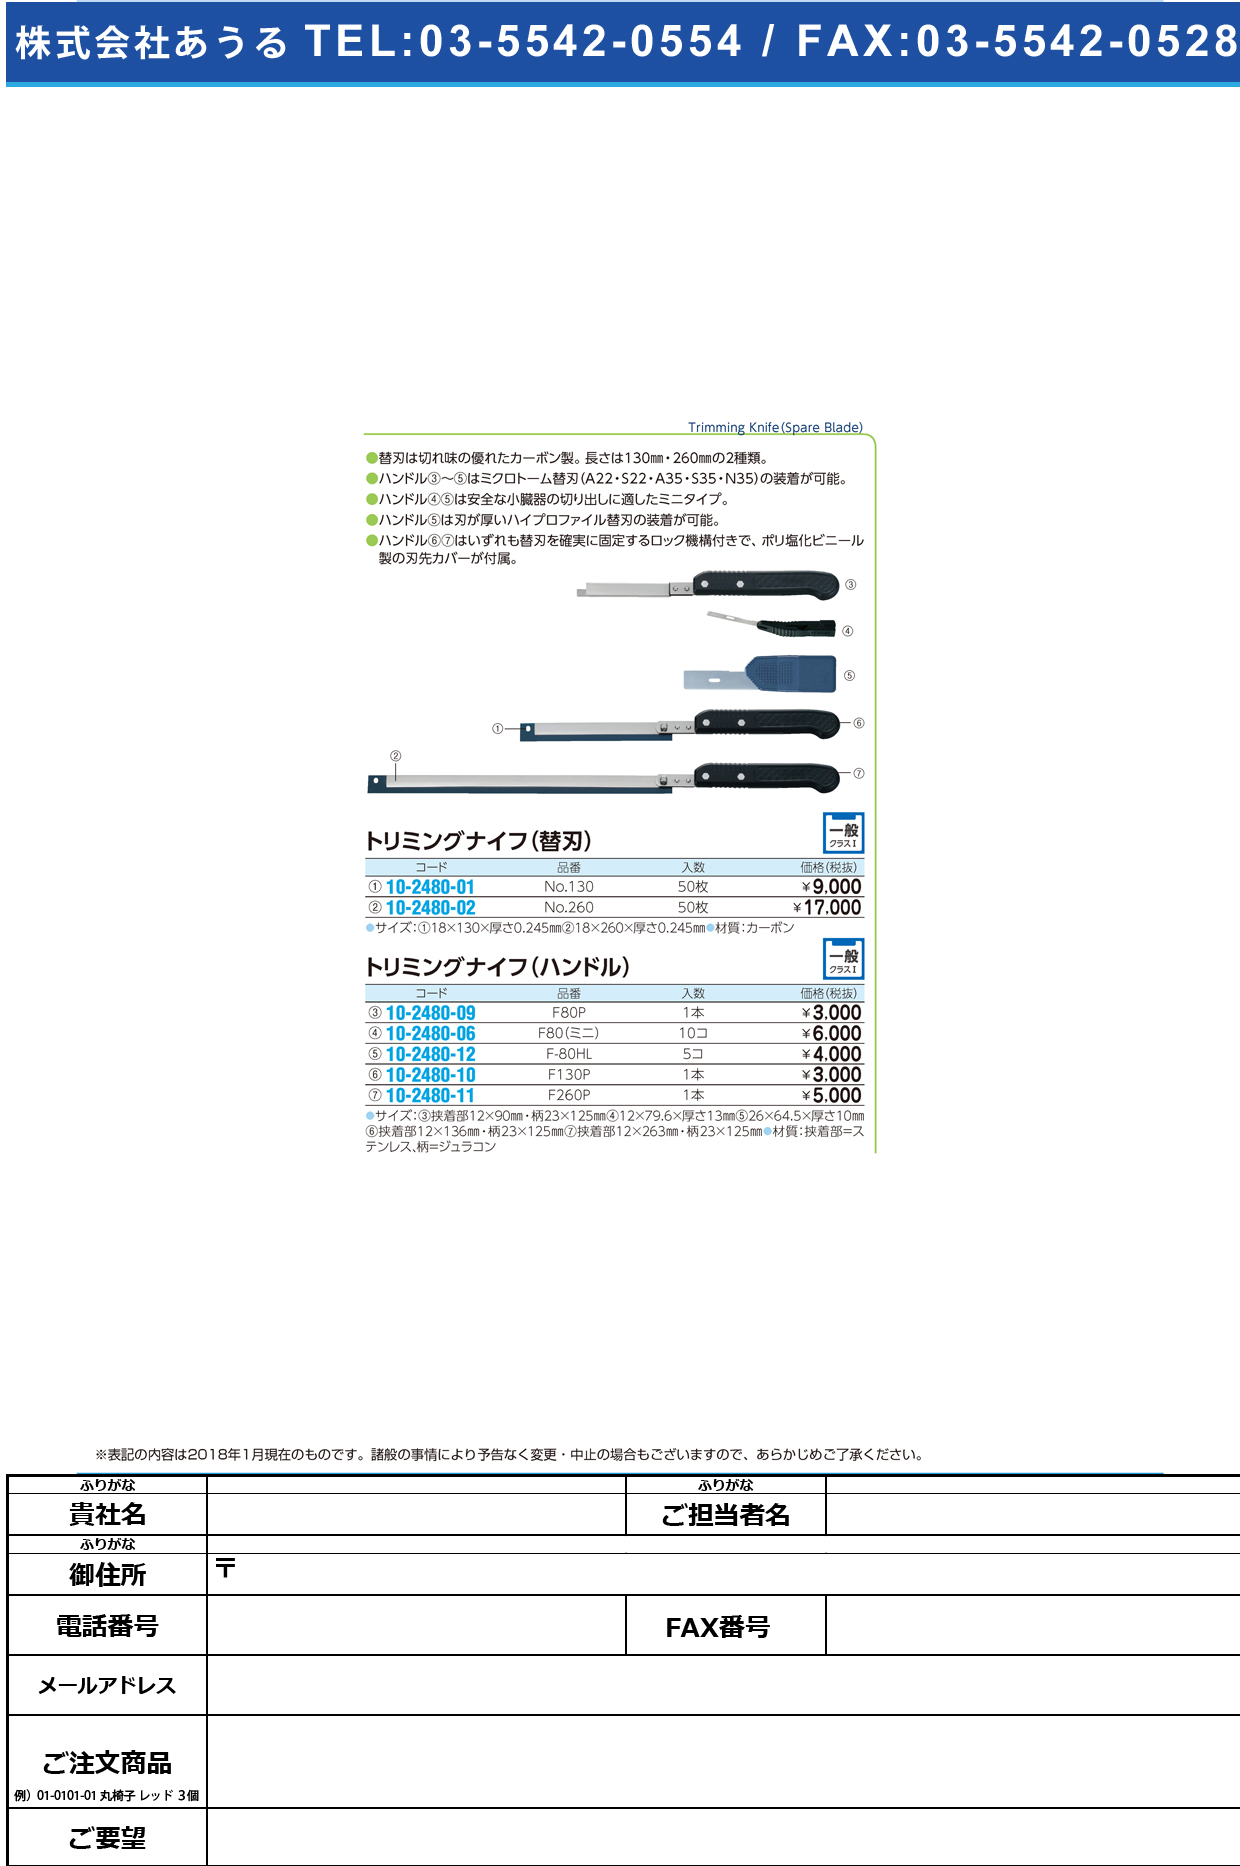 (10-2480-11)トリミングナイフハンドル（フェザー） F-260P ﾄﾘﾐﾝｸﾞﾅｲﾌﾊﾝﾄﾞﾙ(ﾌｪｻﾞｰ【1本単位】【2018年カタログ商品】